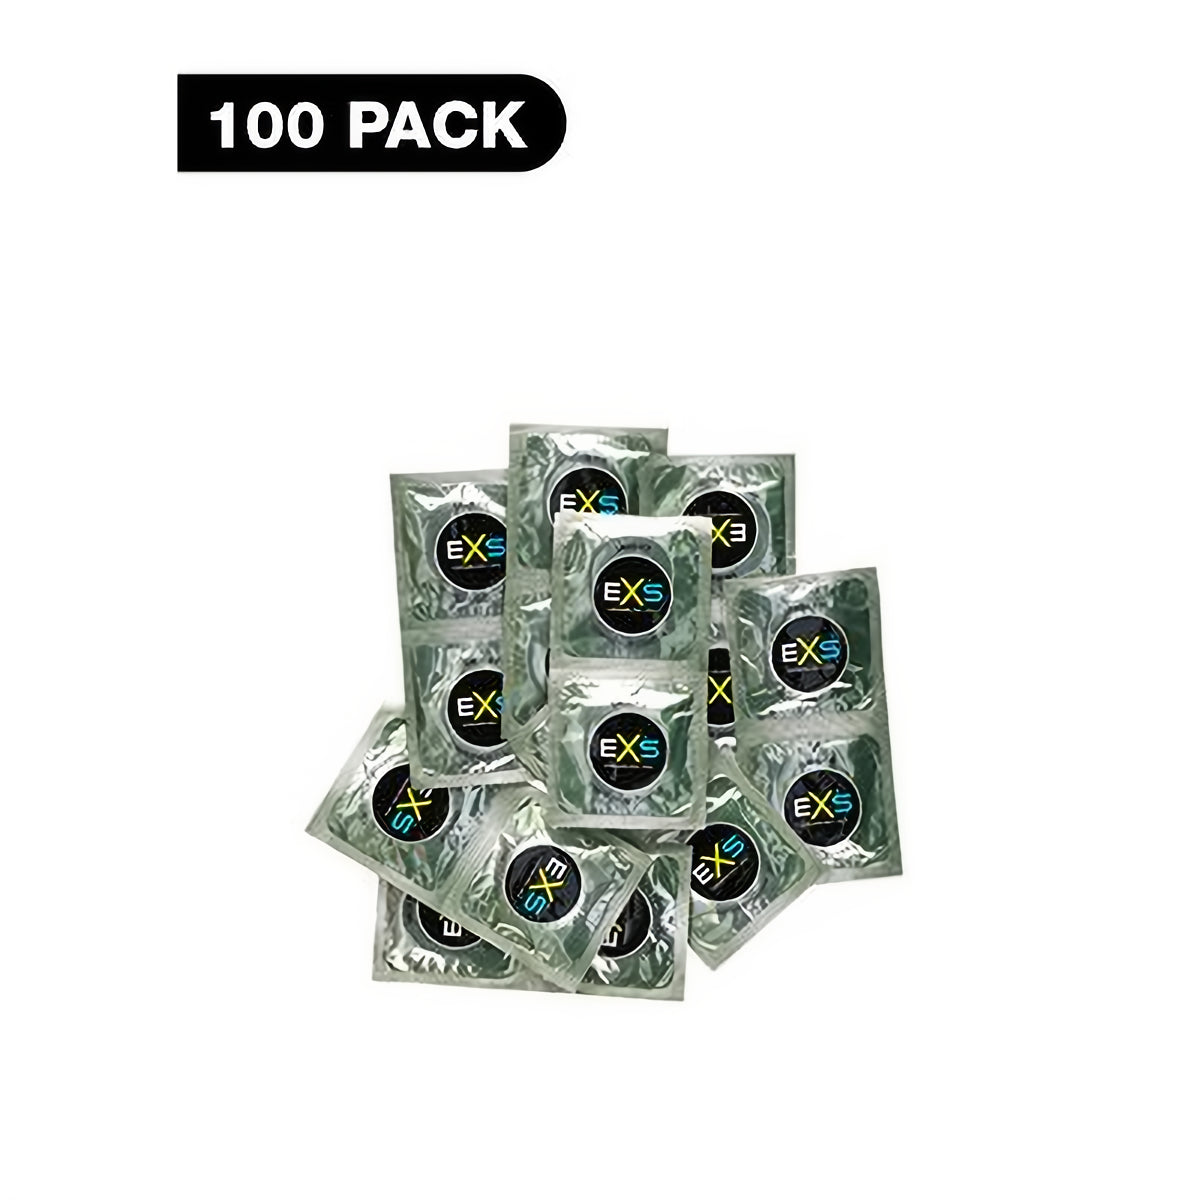 EXS Snug Fit - Condoms - 100 Pieces - EroticToyzProducten,Veilige Seks, Verzorging Hulp,Veilige Seks,Condooms voor Mannen,,MannelijkEXS